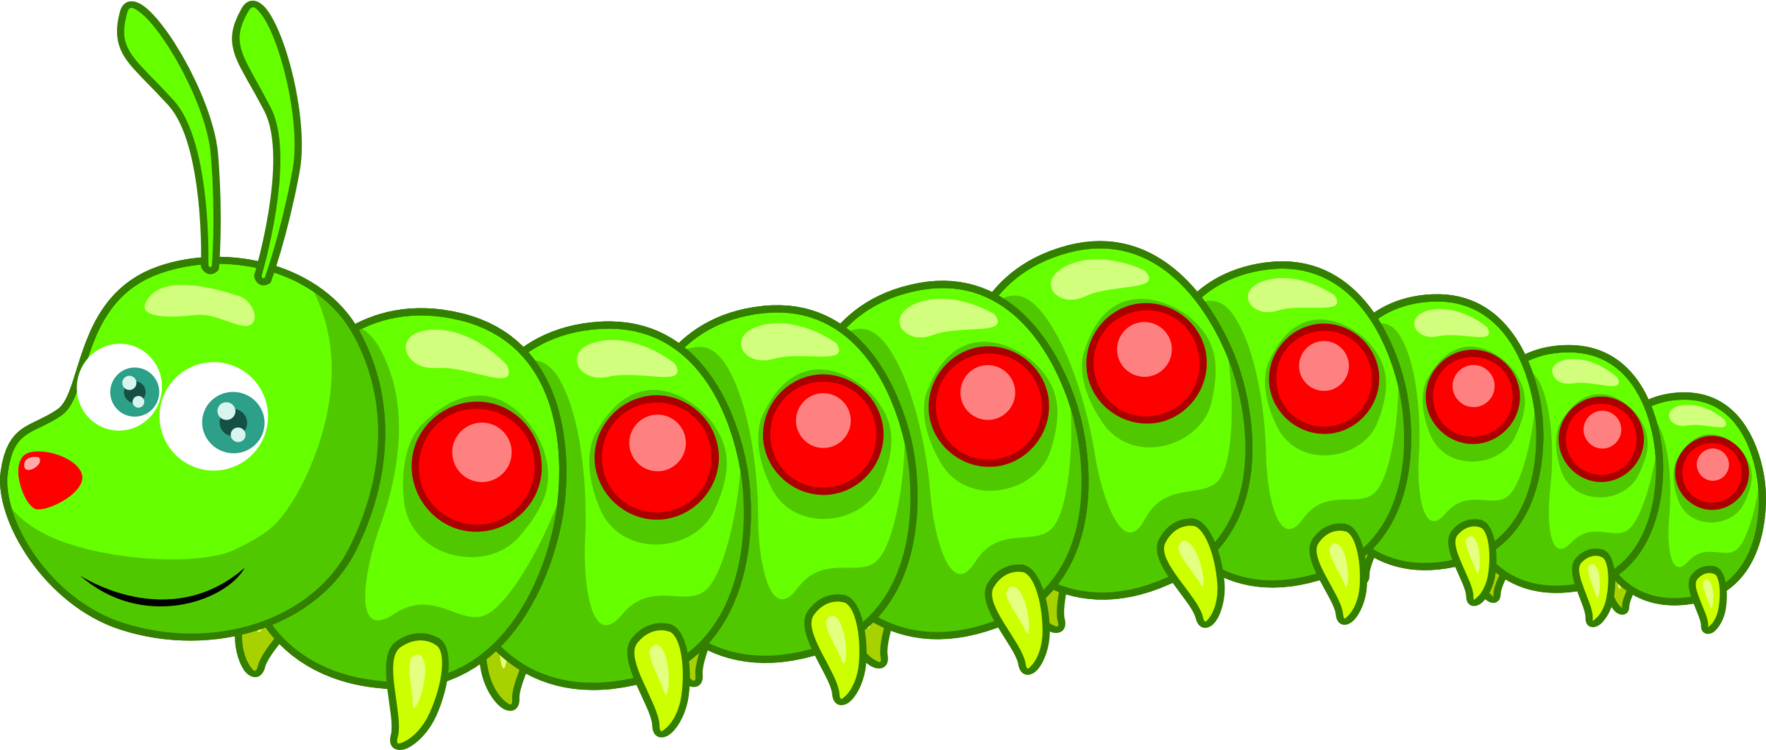 Clip art Caterpillar Image Cartoon Drawing - caterpillar png download ...